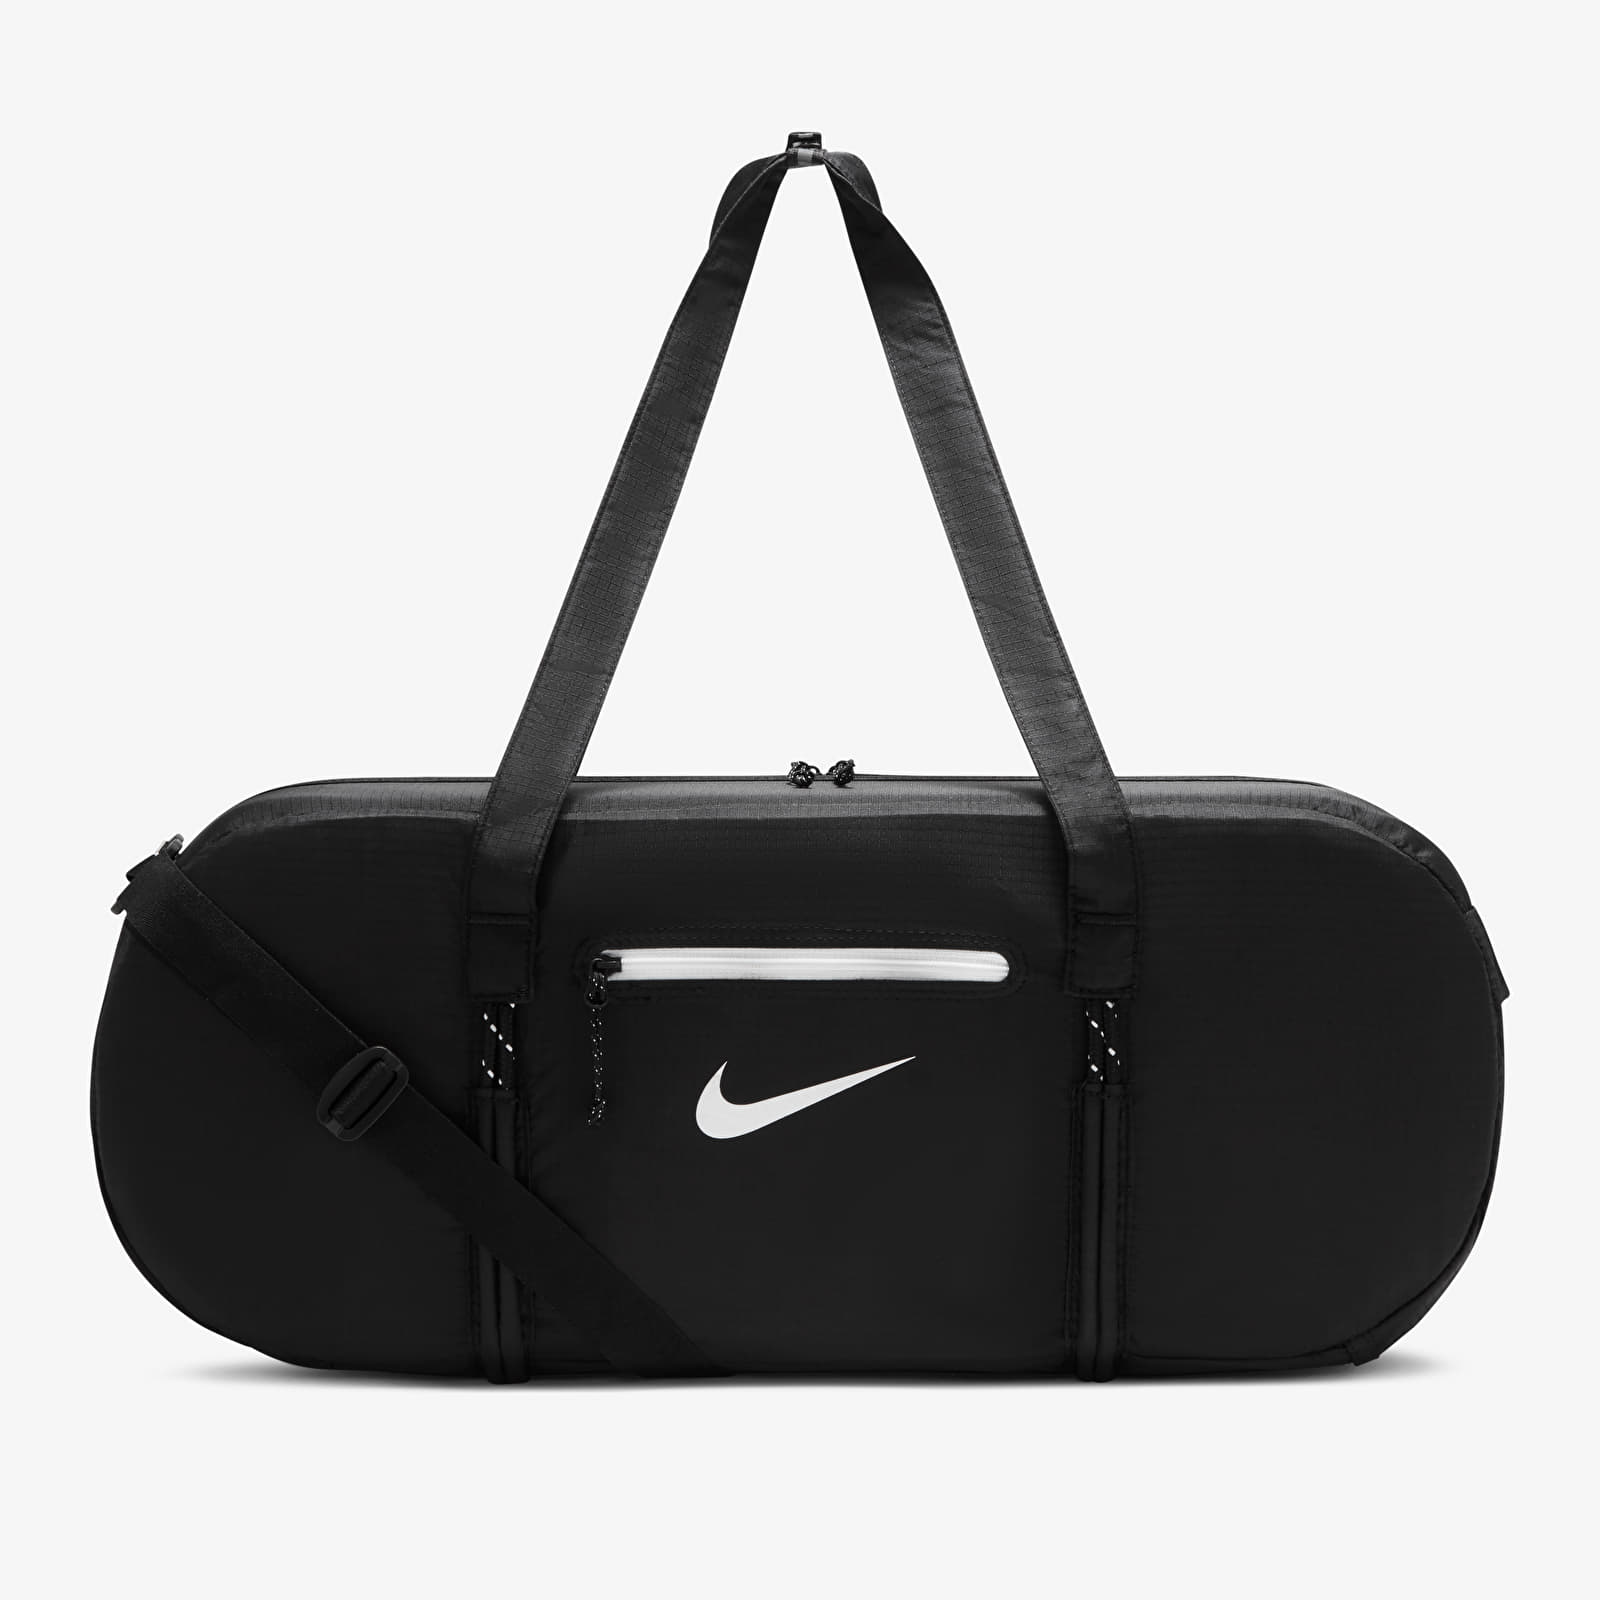 Duffle bag Nike Stash Duffel Black/ Black/ White 1092808